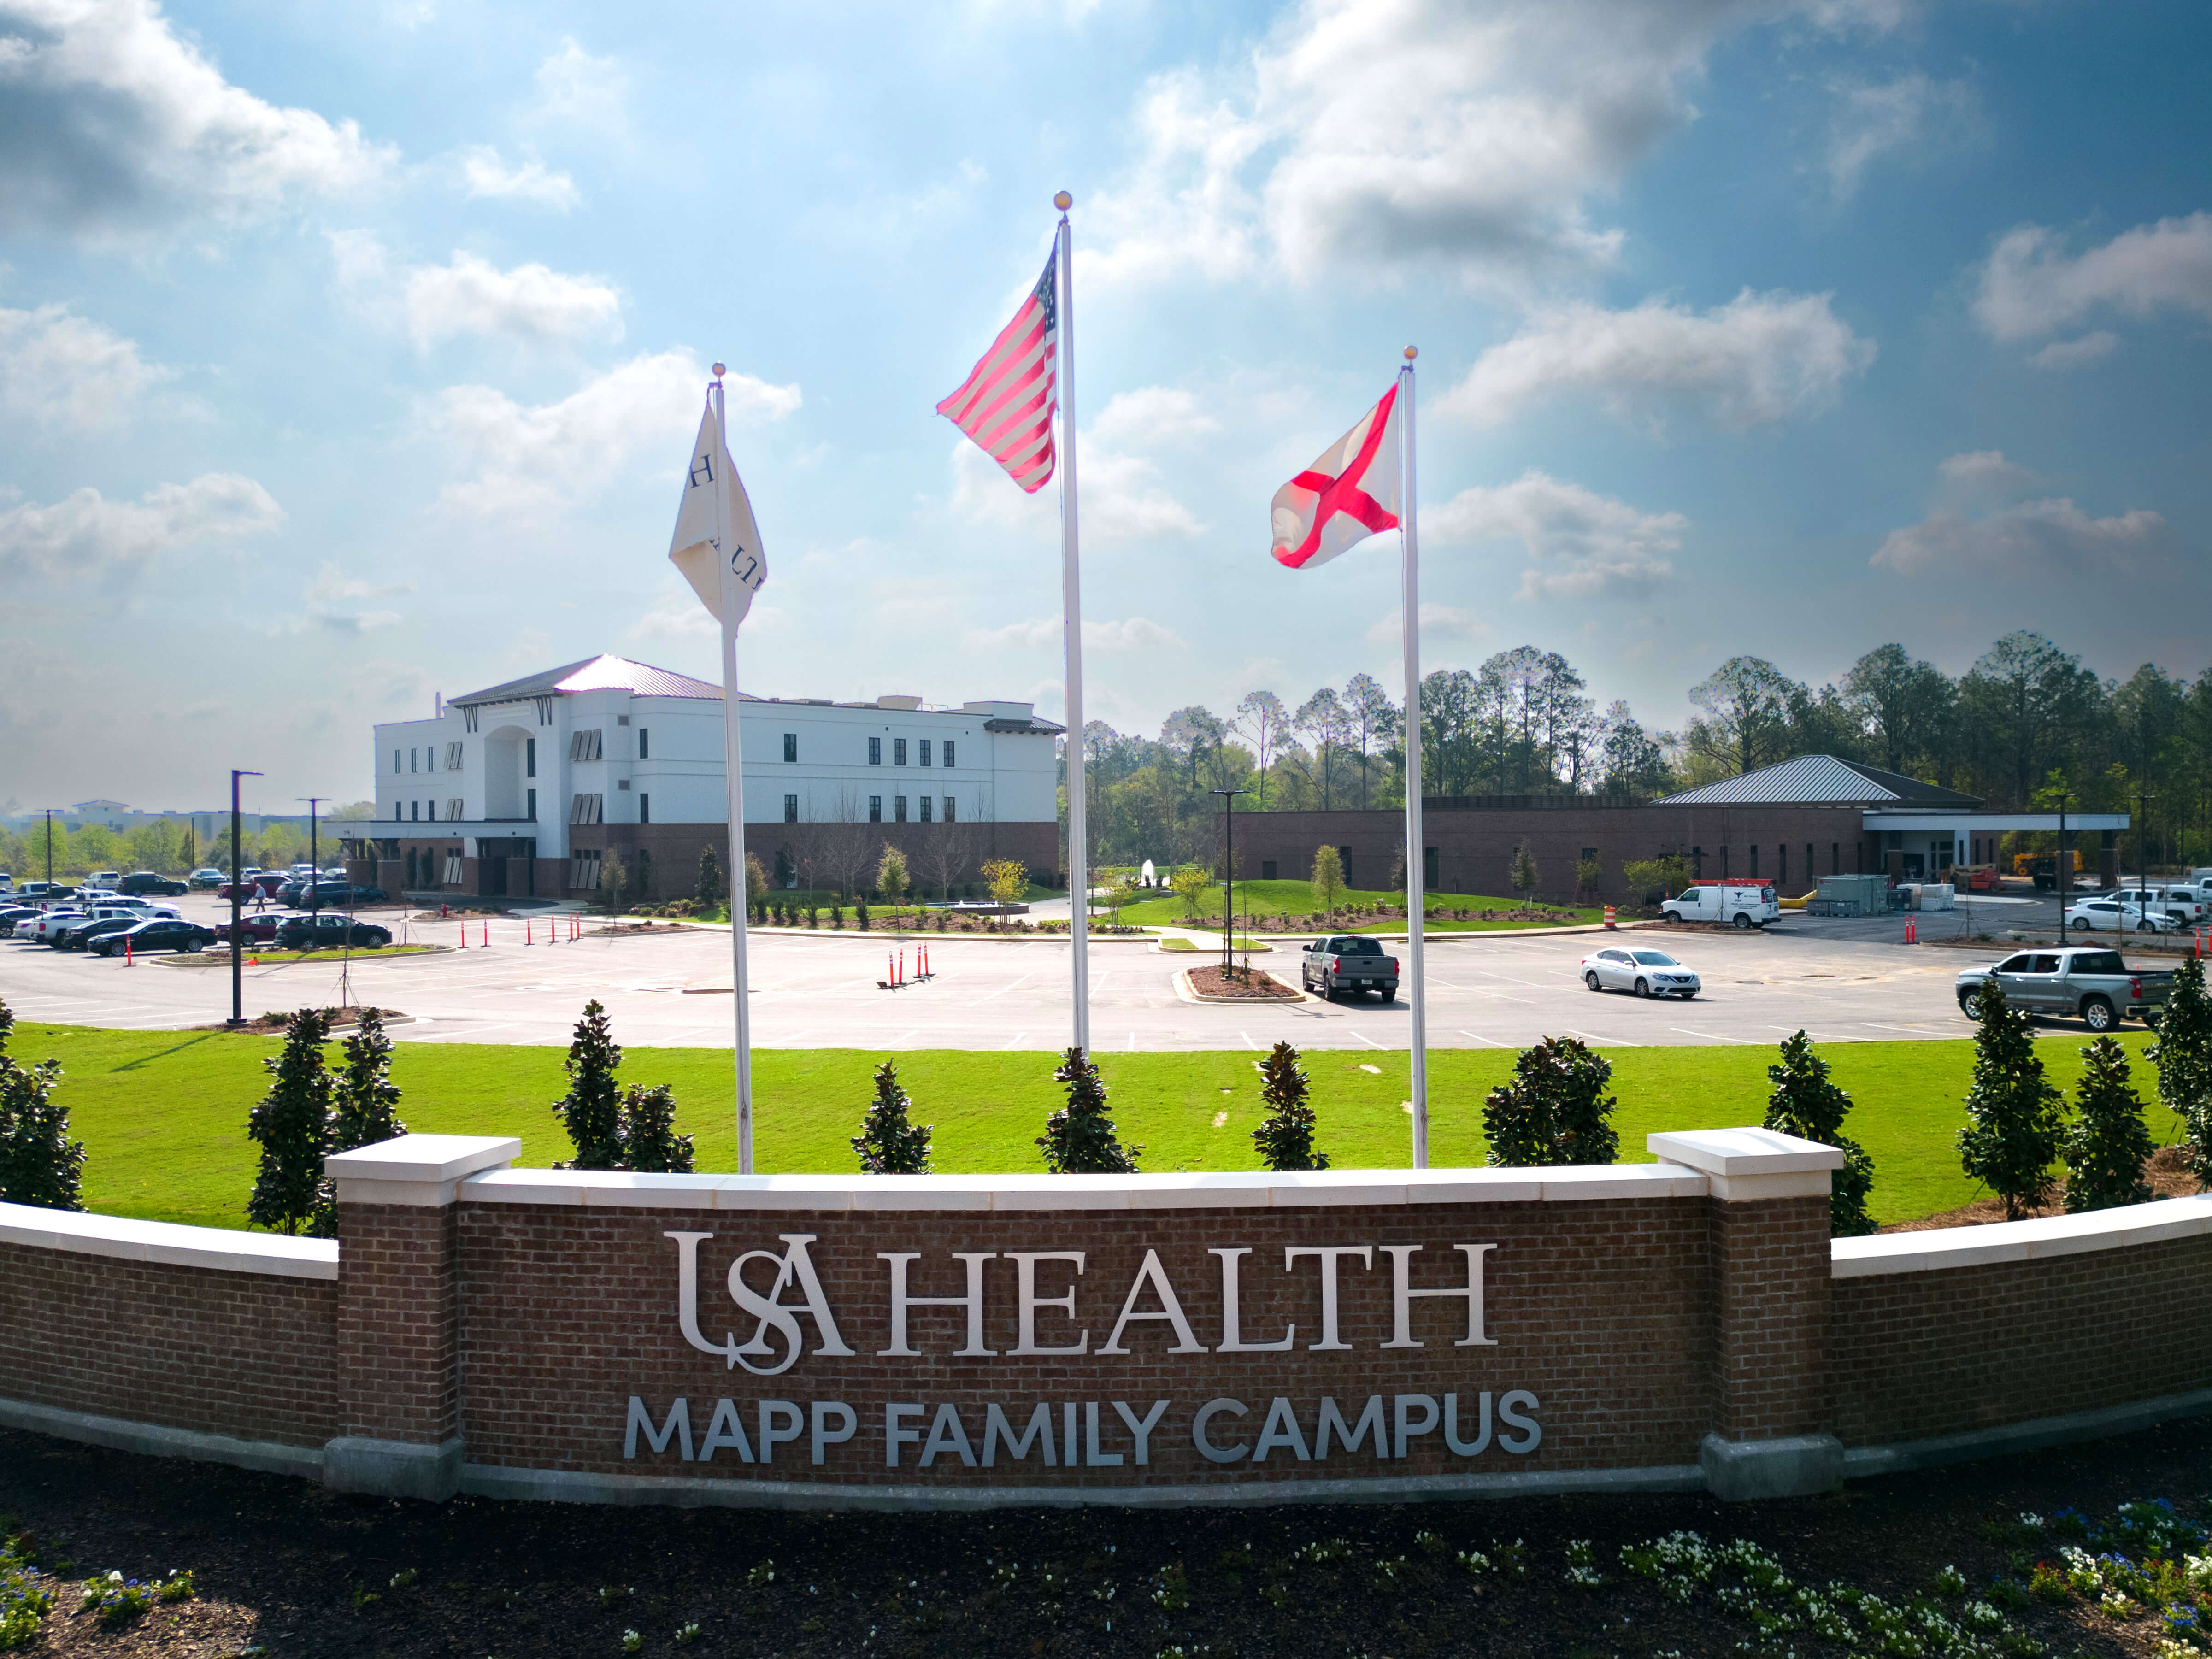 USA Health Mapp Family Campus